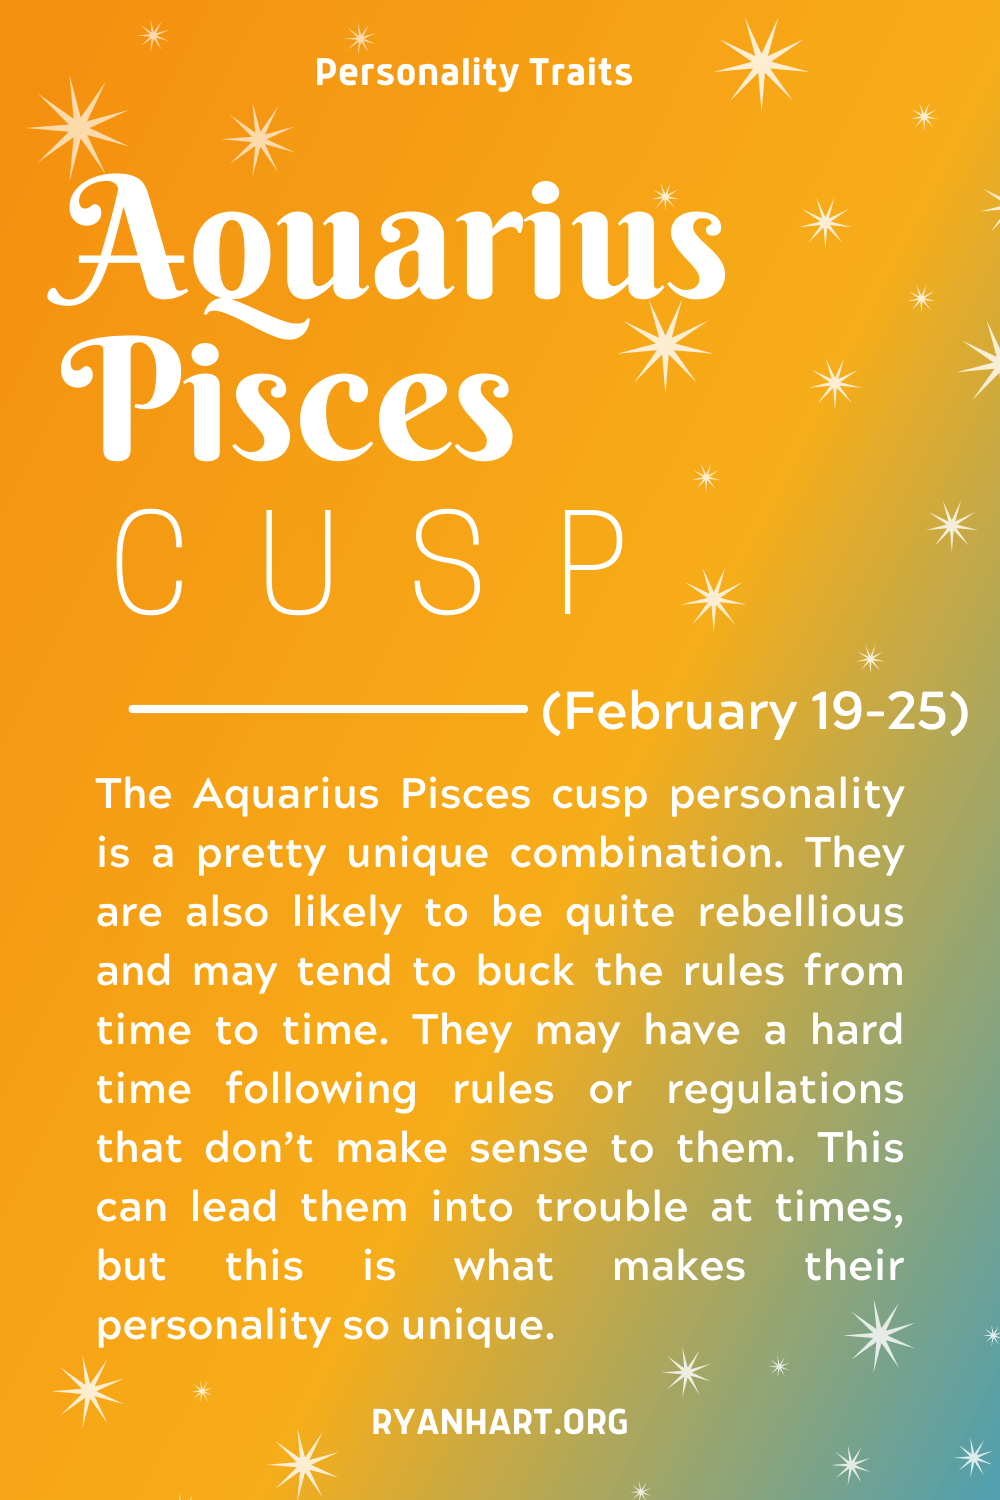 Aquarius Pisces Cusp Description